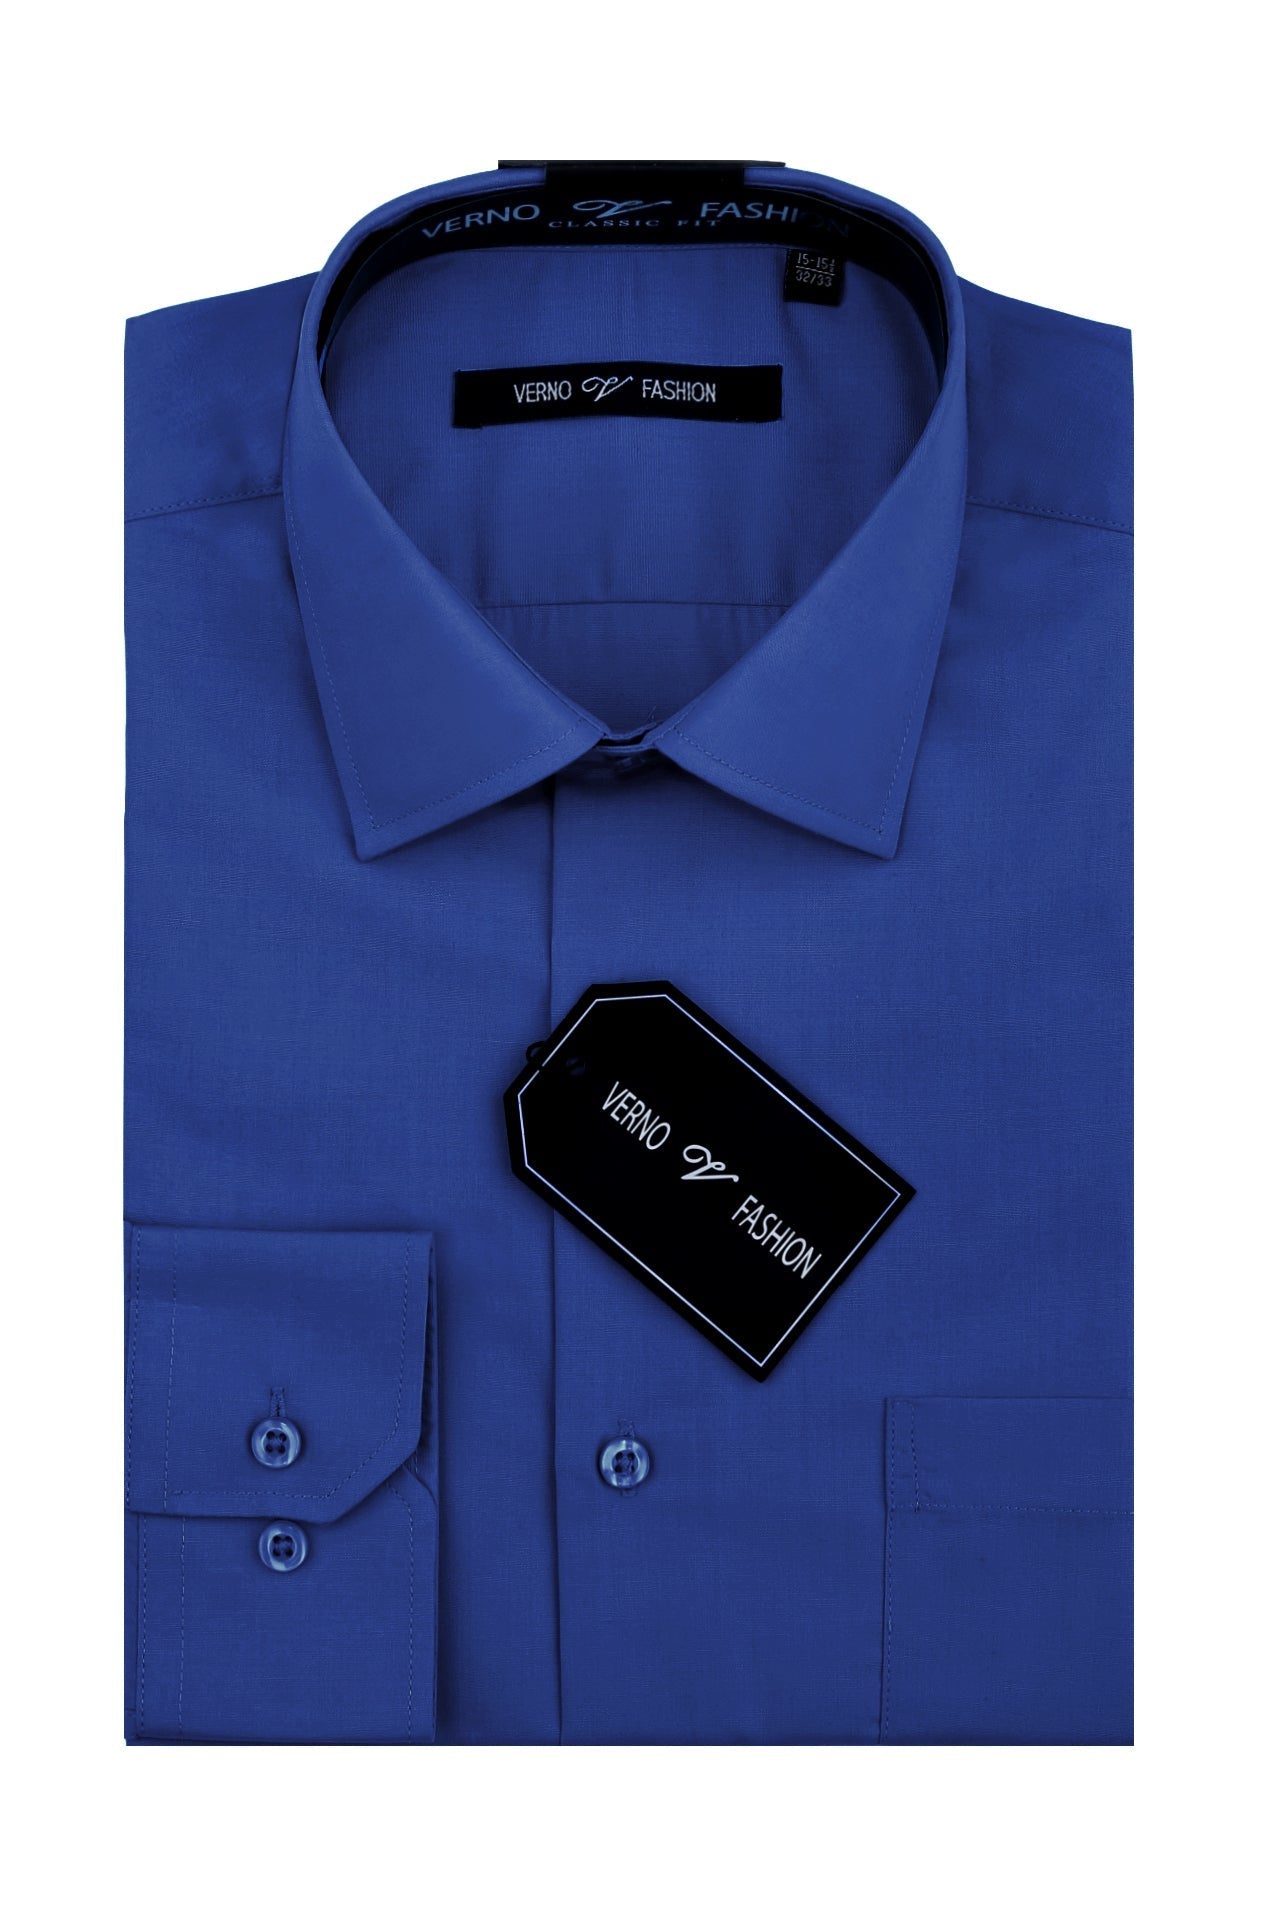 "Royal Blue Men's Dress Shirt - Regular Fit Cotton Blend"